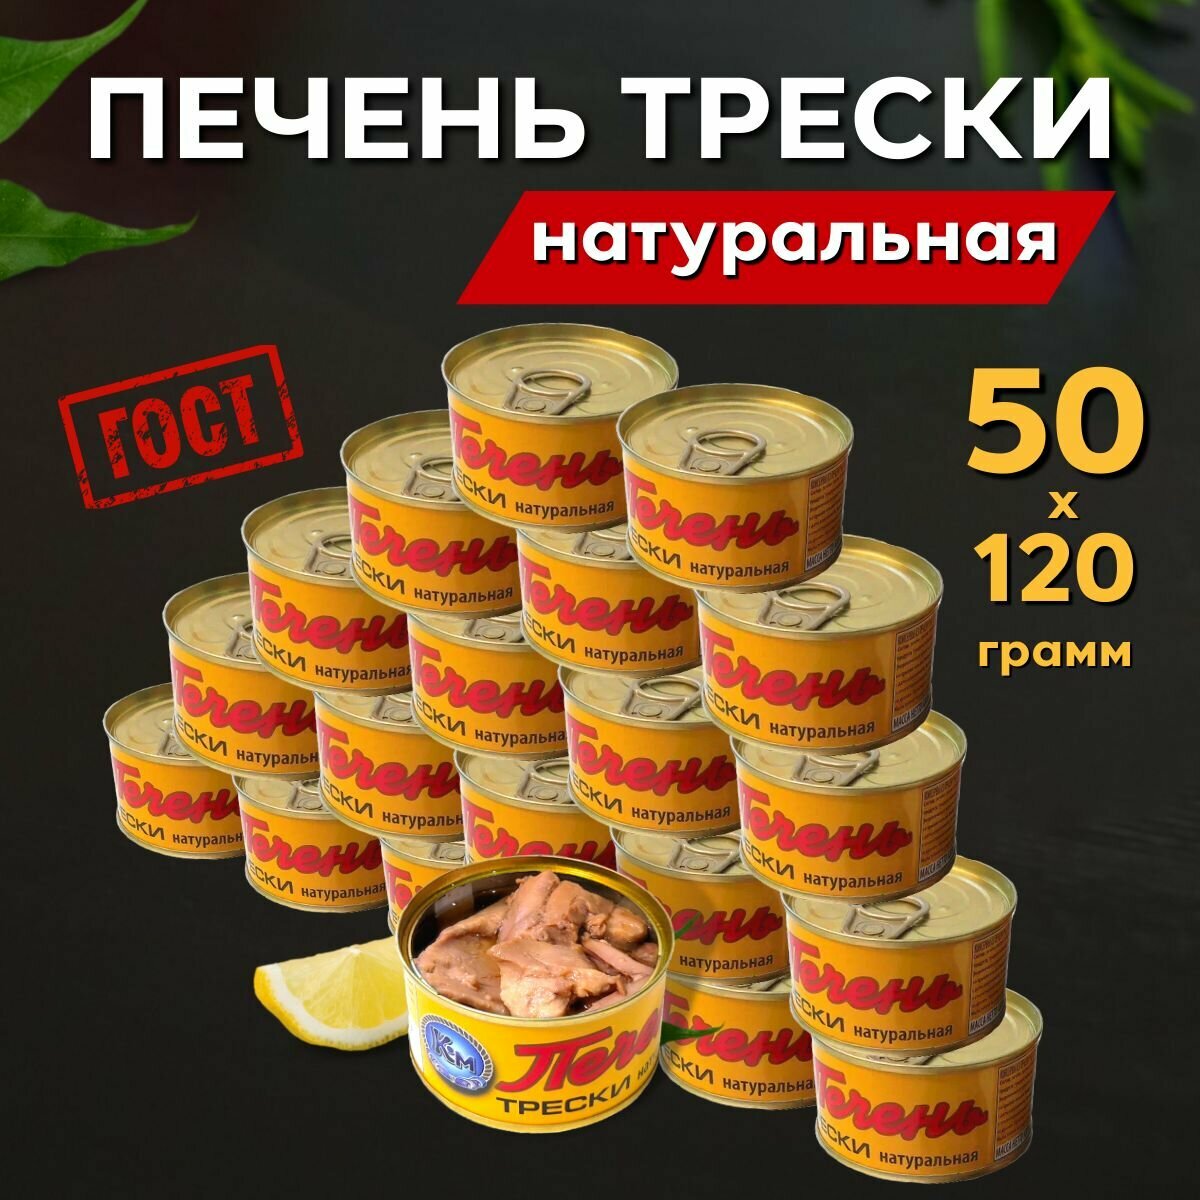 Печень трески Атлантической натуральная целыми кусочками ГОСТ 6000 г. (50 банок по 120 грамм)